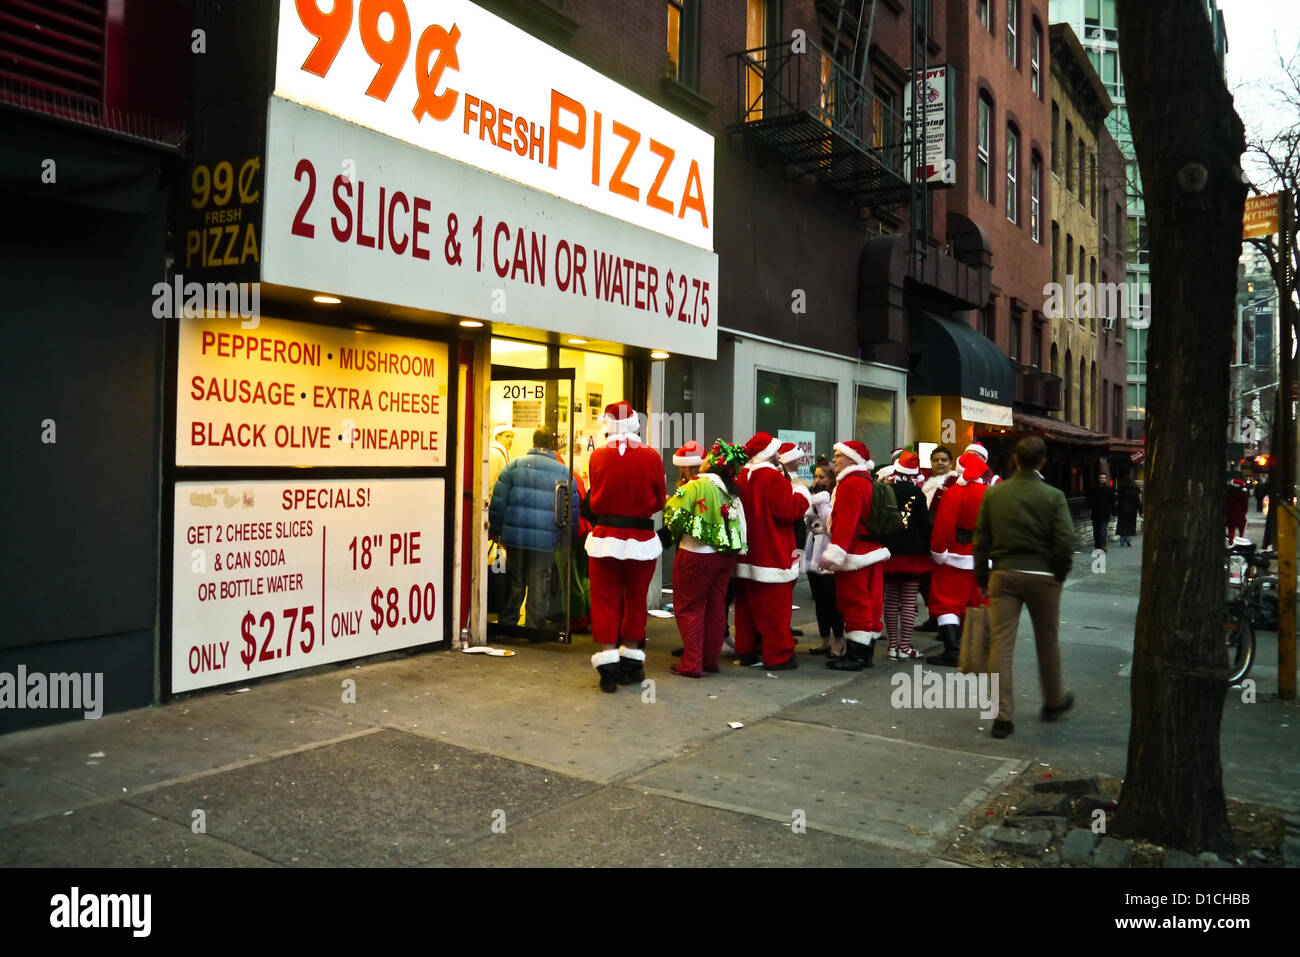 NEW YORK, NY - 15 dicembre: buontemponi vestiti da Babbo Natale di attendere in linea per 99 cent Pizza durante l'annuale evento SantaCon Dicembre 15, 2012 in New York City. (Foto di Donald Bowers) Foto Stock